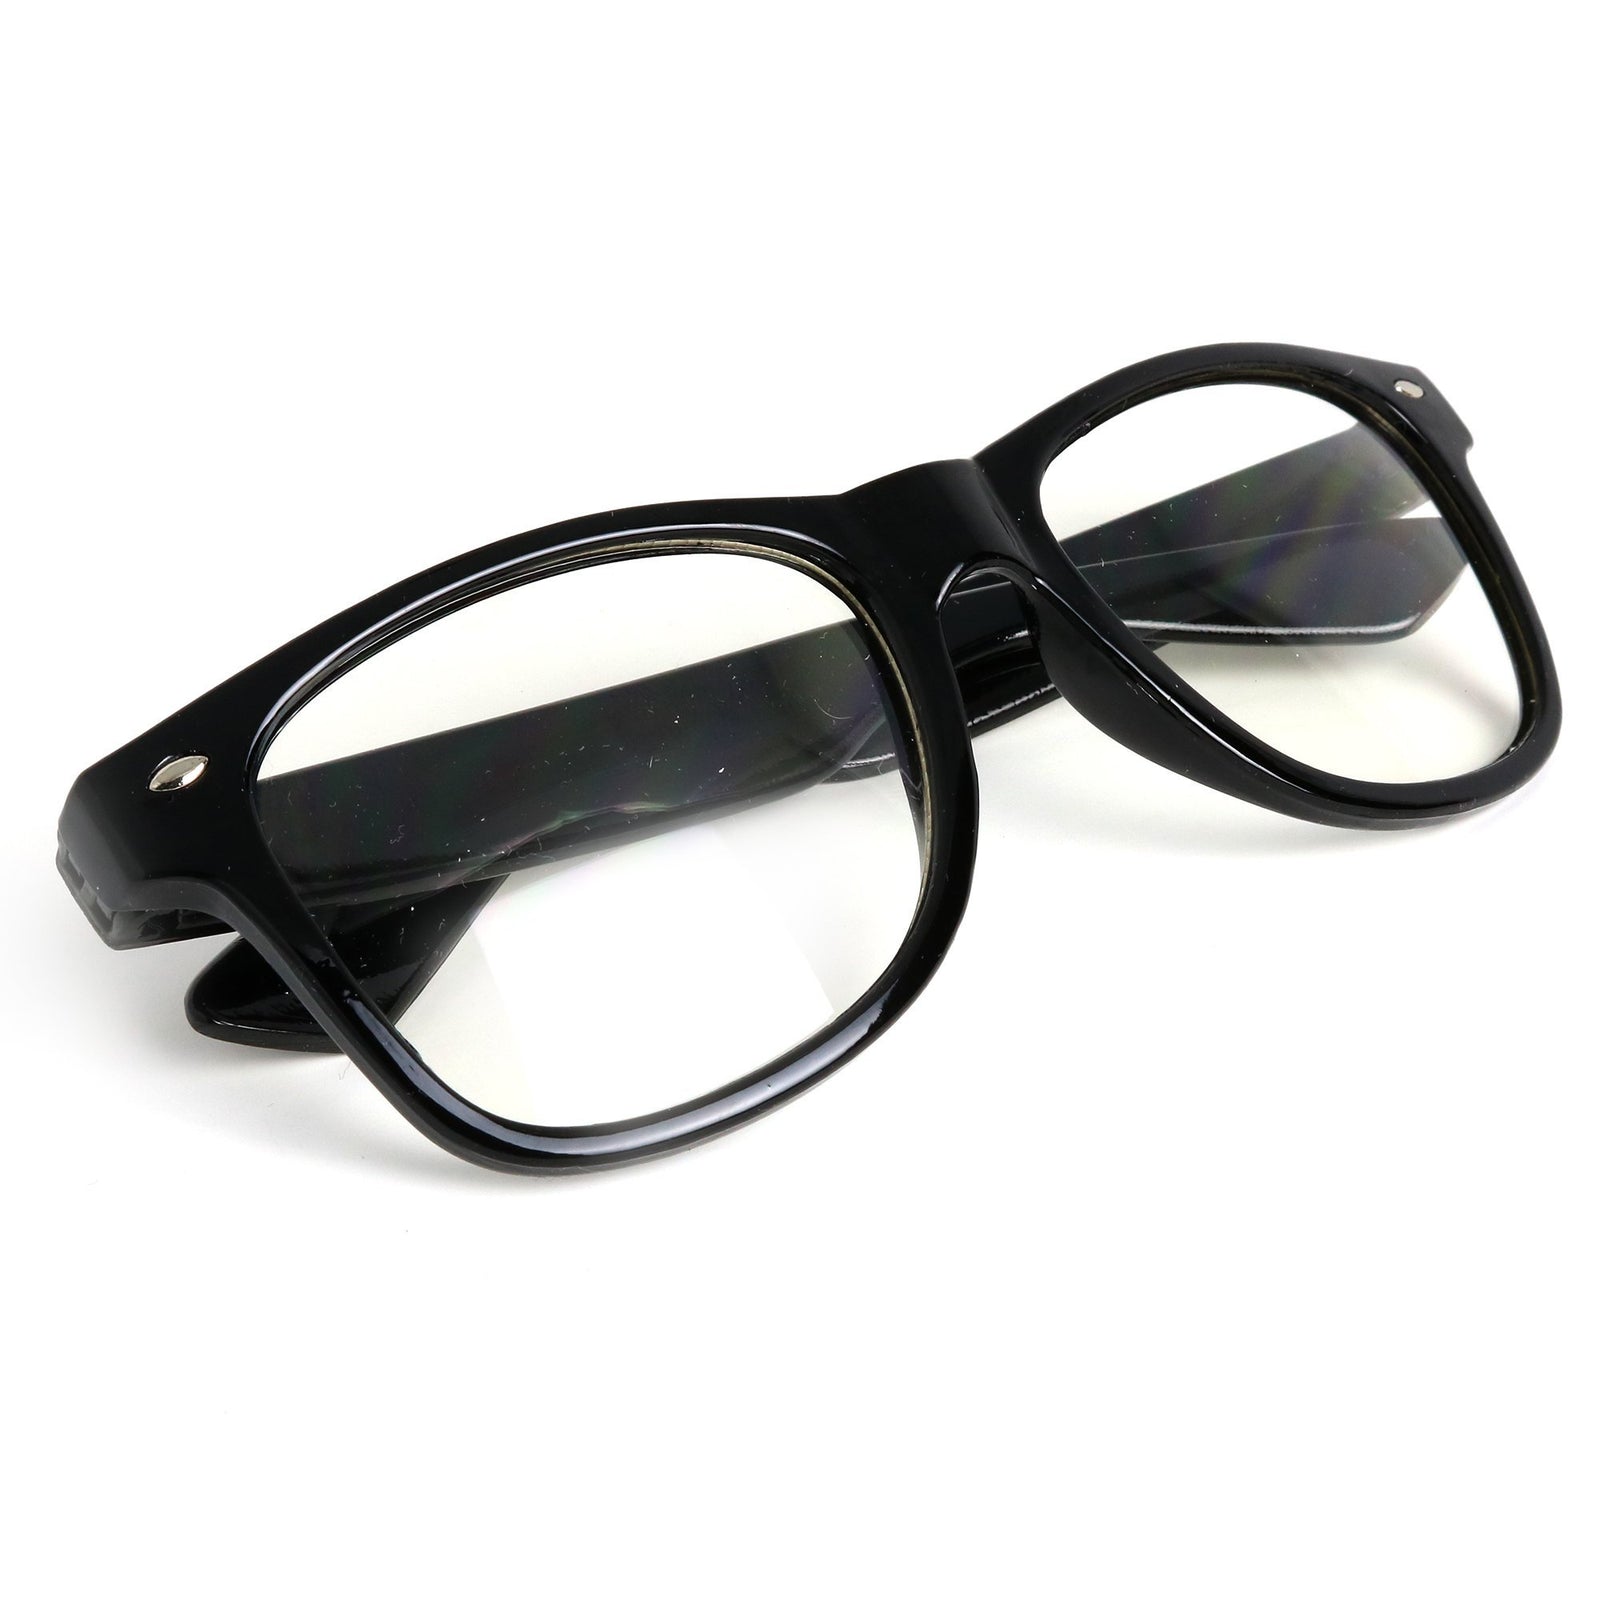 Skeleteen Retro Nerd Costume Glasses - Oversized Black Hipster Eyeglasses with Clear Lenses - 1 Pair